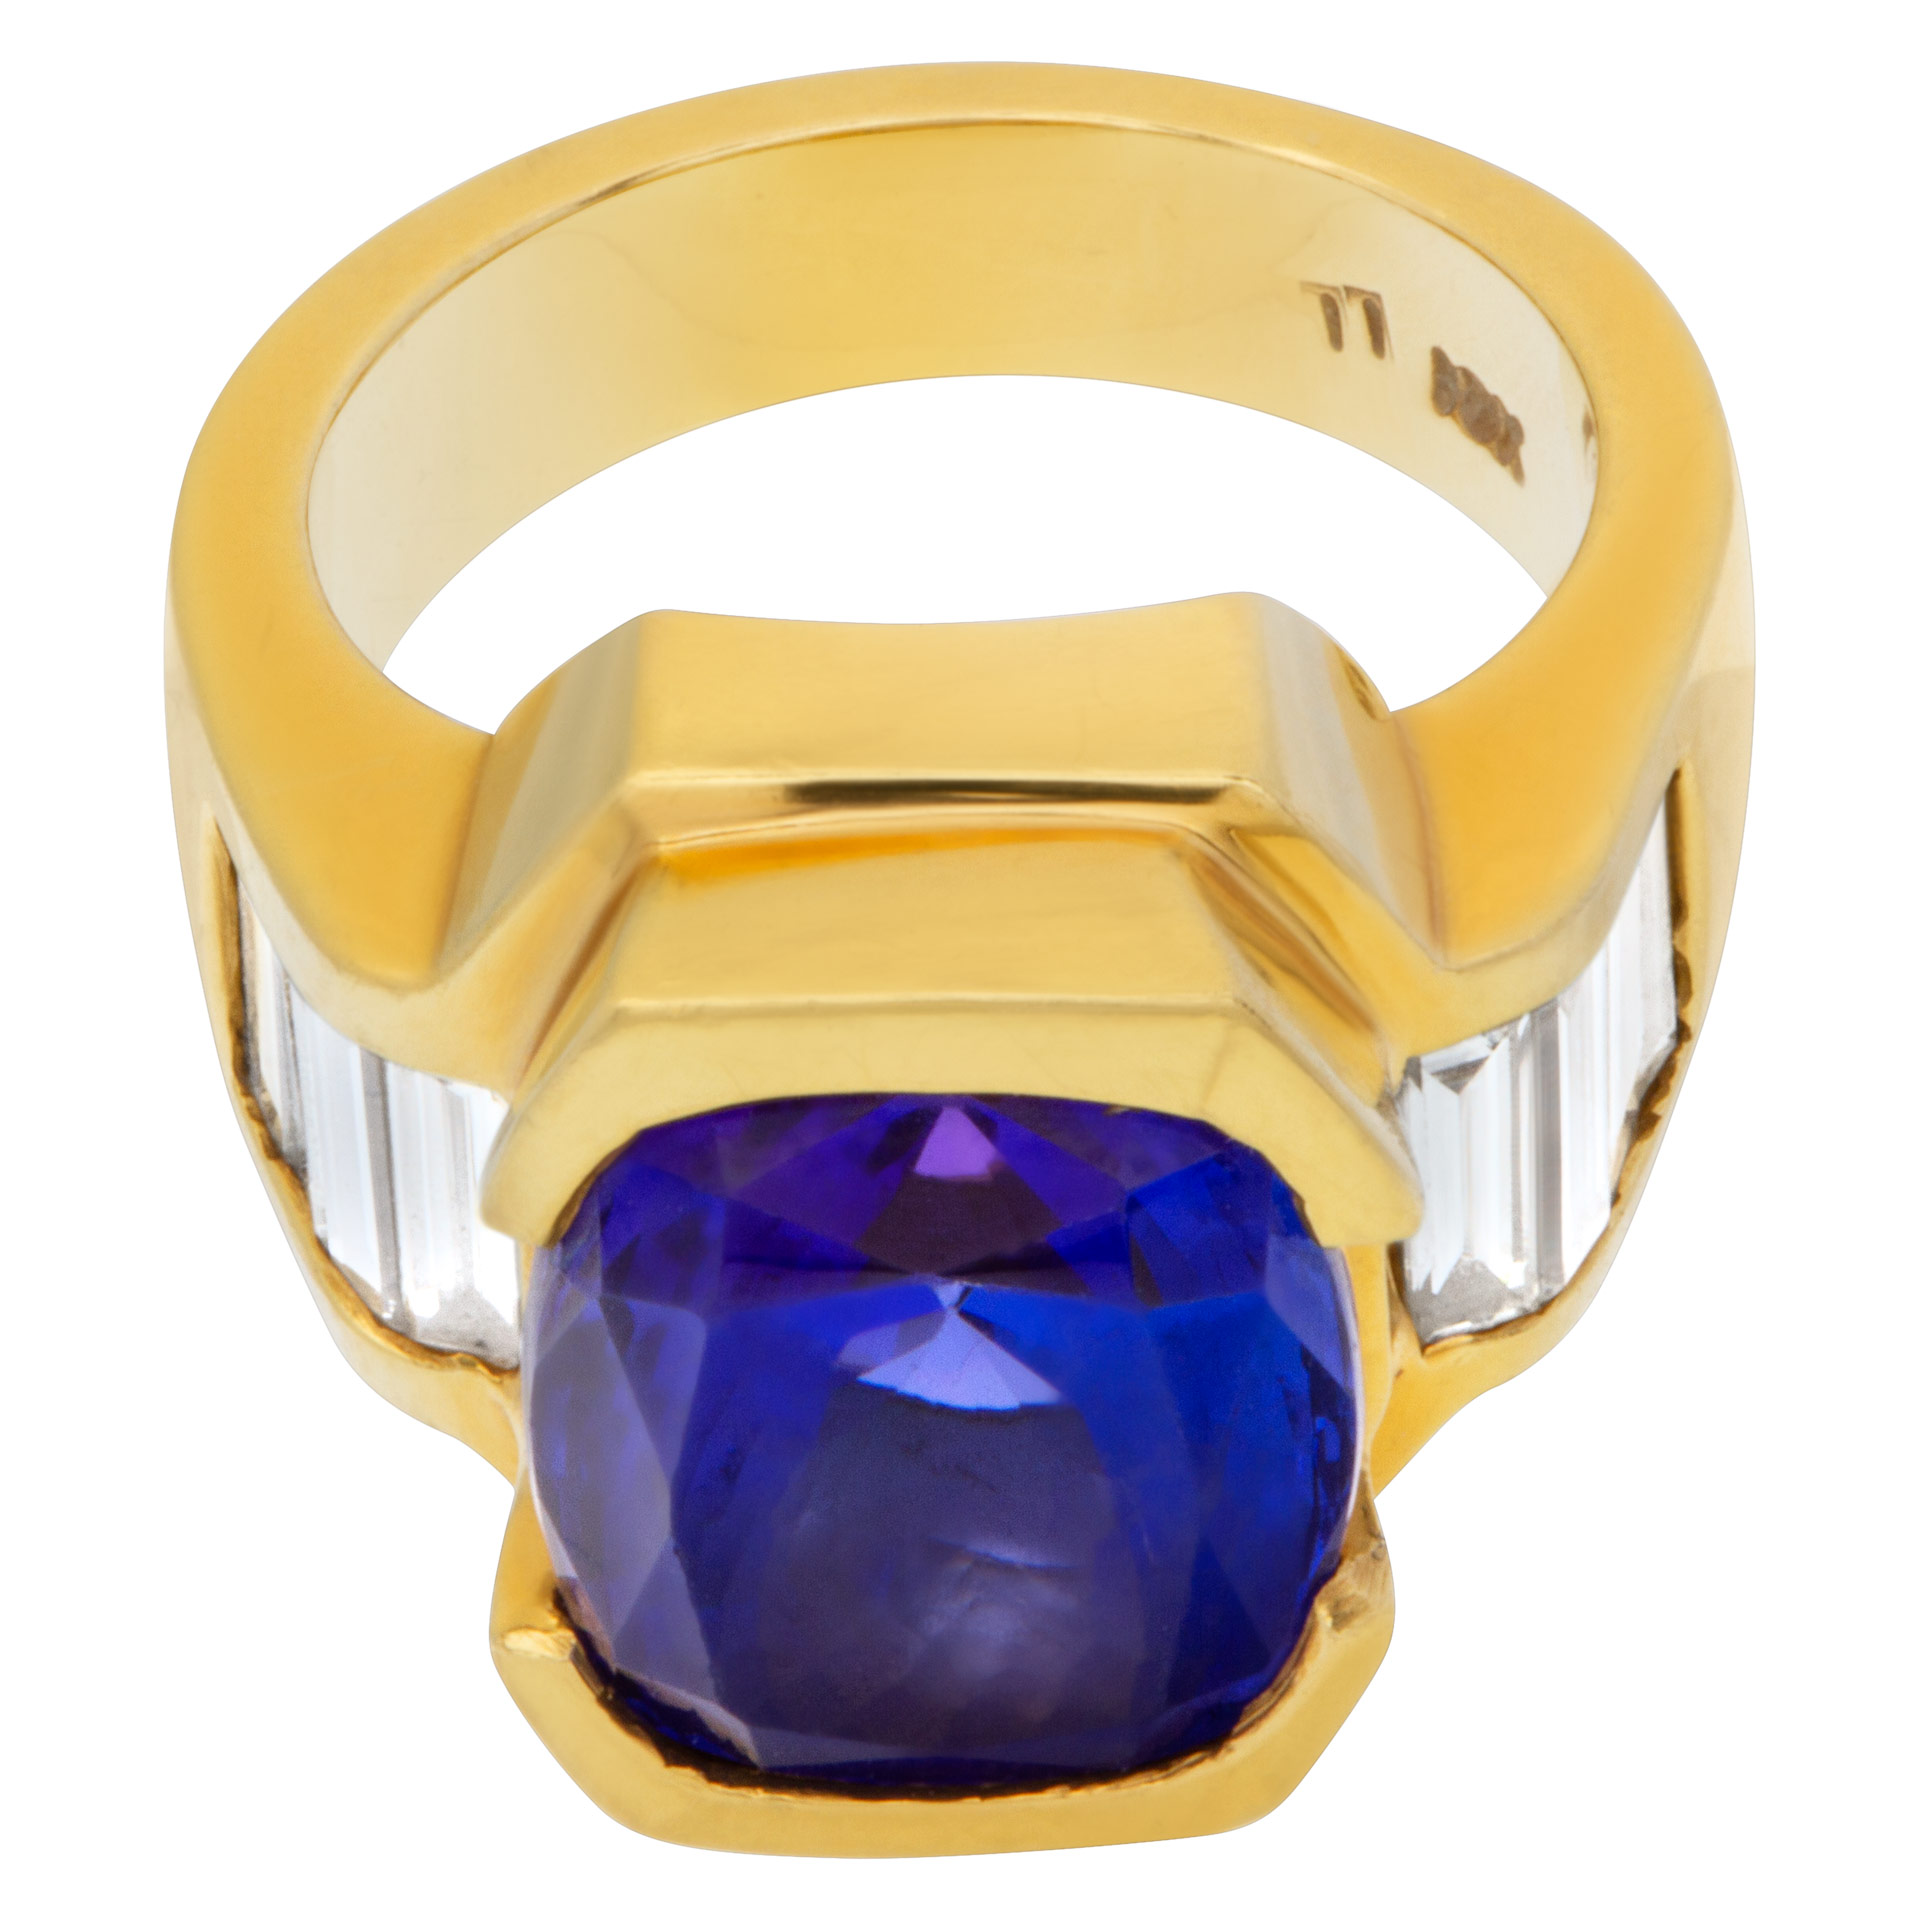 AGL certified striking blue gem tanzanite 9.52 carat diamond ring